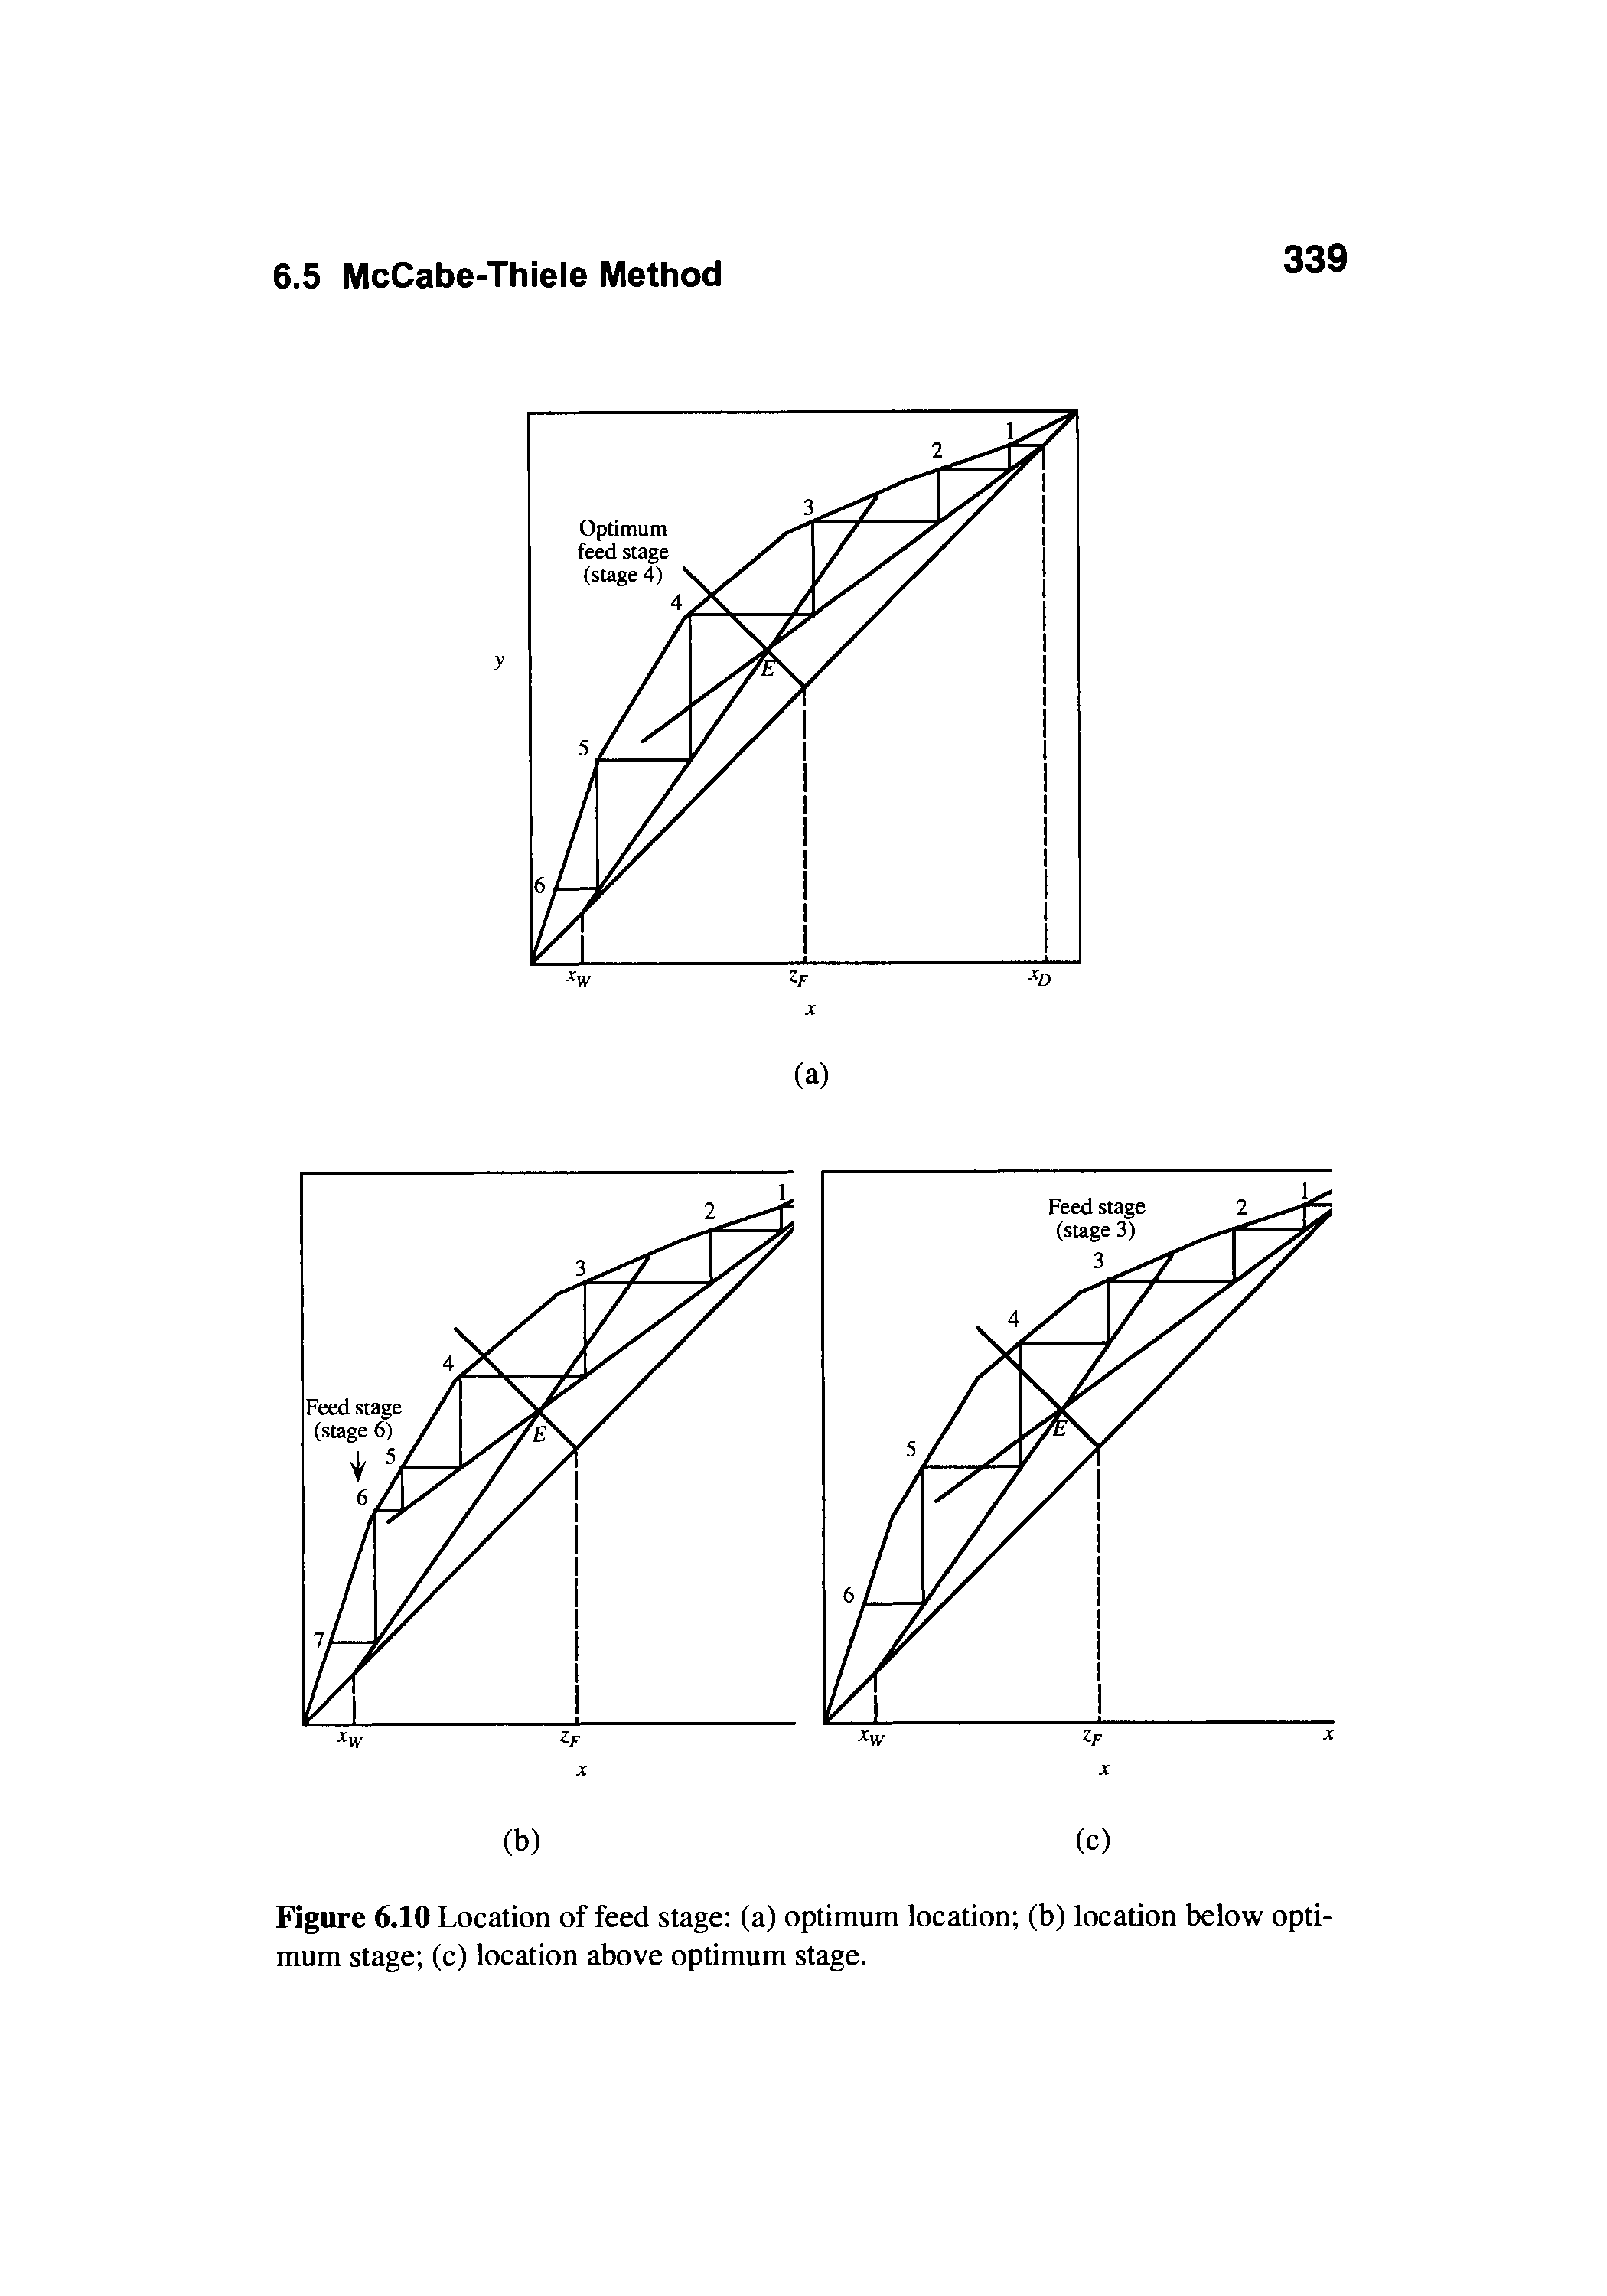 Figure 6.10 Location of feed stage (a) optimum location (b) location below optimum stage (c) location above optimum stage.